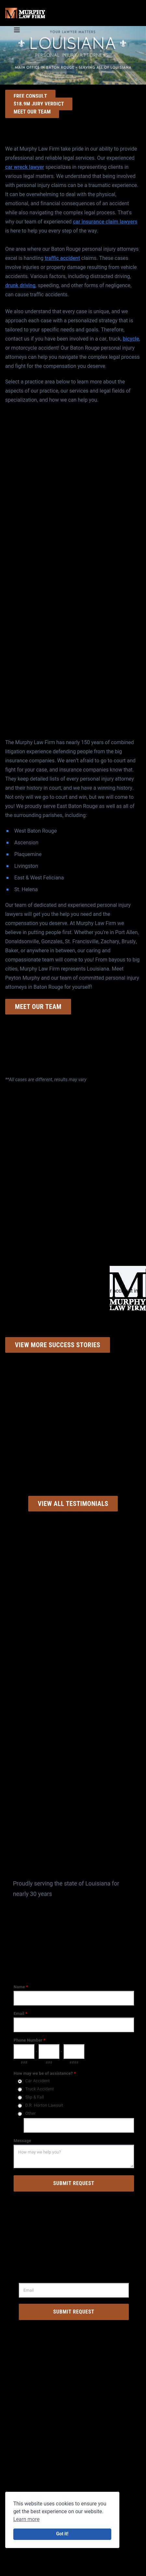 Murphy Law Firm LLC - New Orleans LA Lawyers